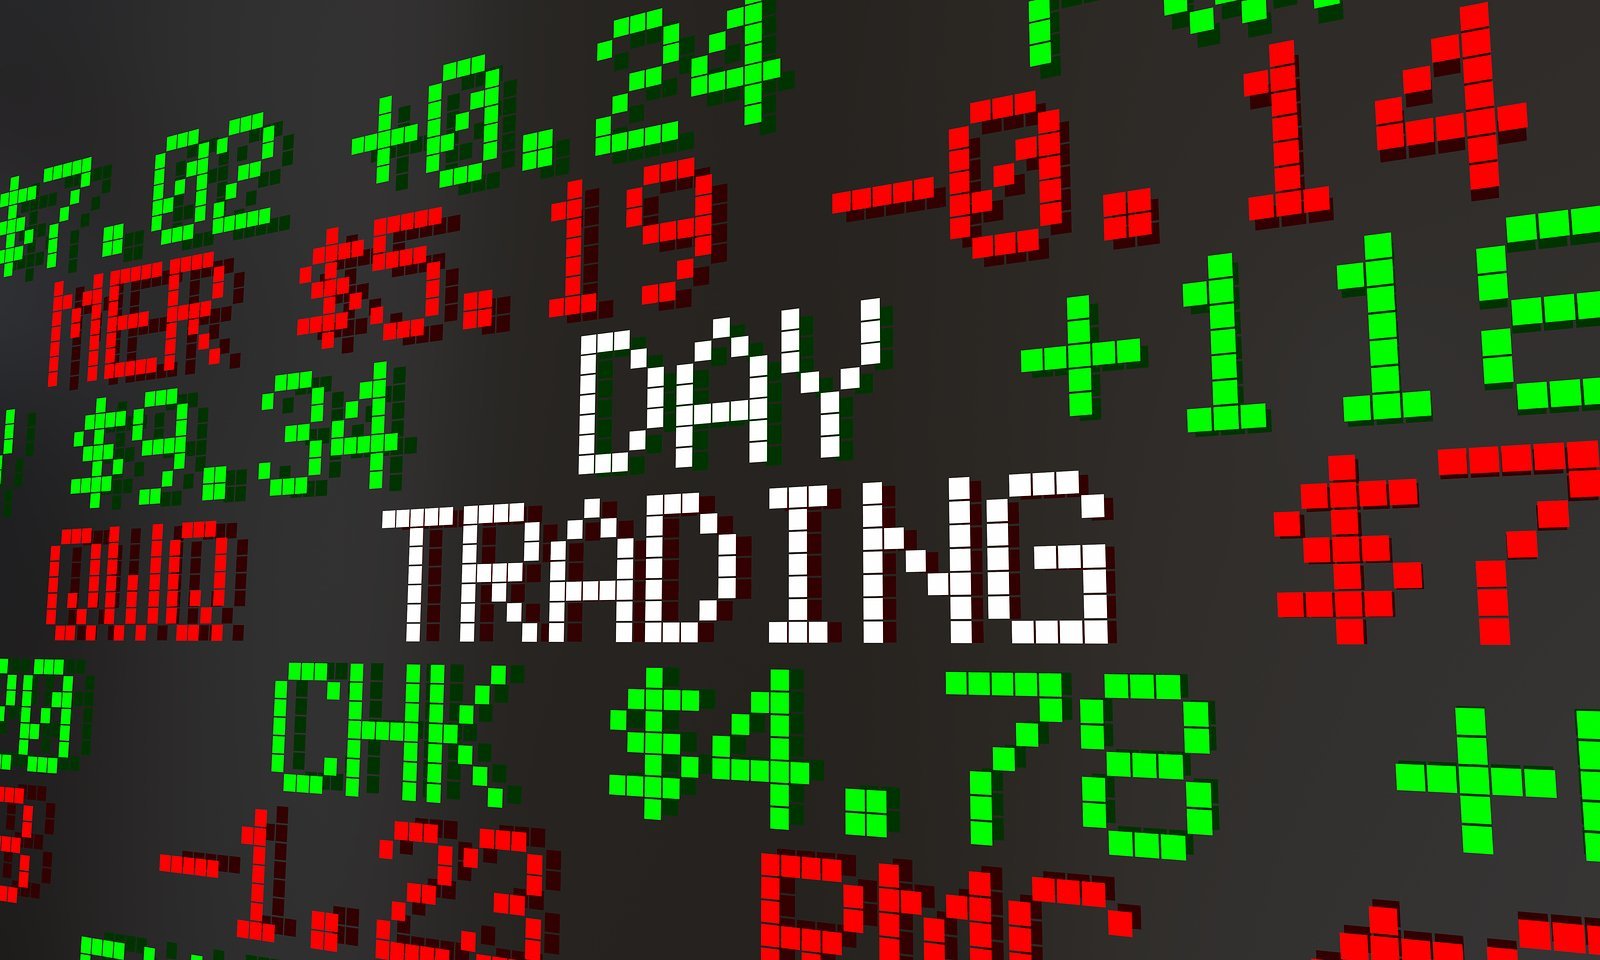 Day trading - giao dịch trong ngày, là phương pháp đầu tư bạc được nhiều trader ưa chuộng